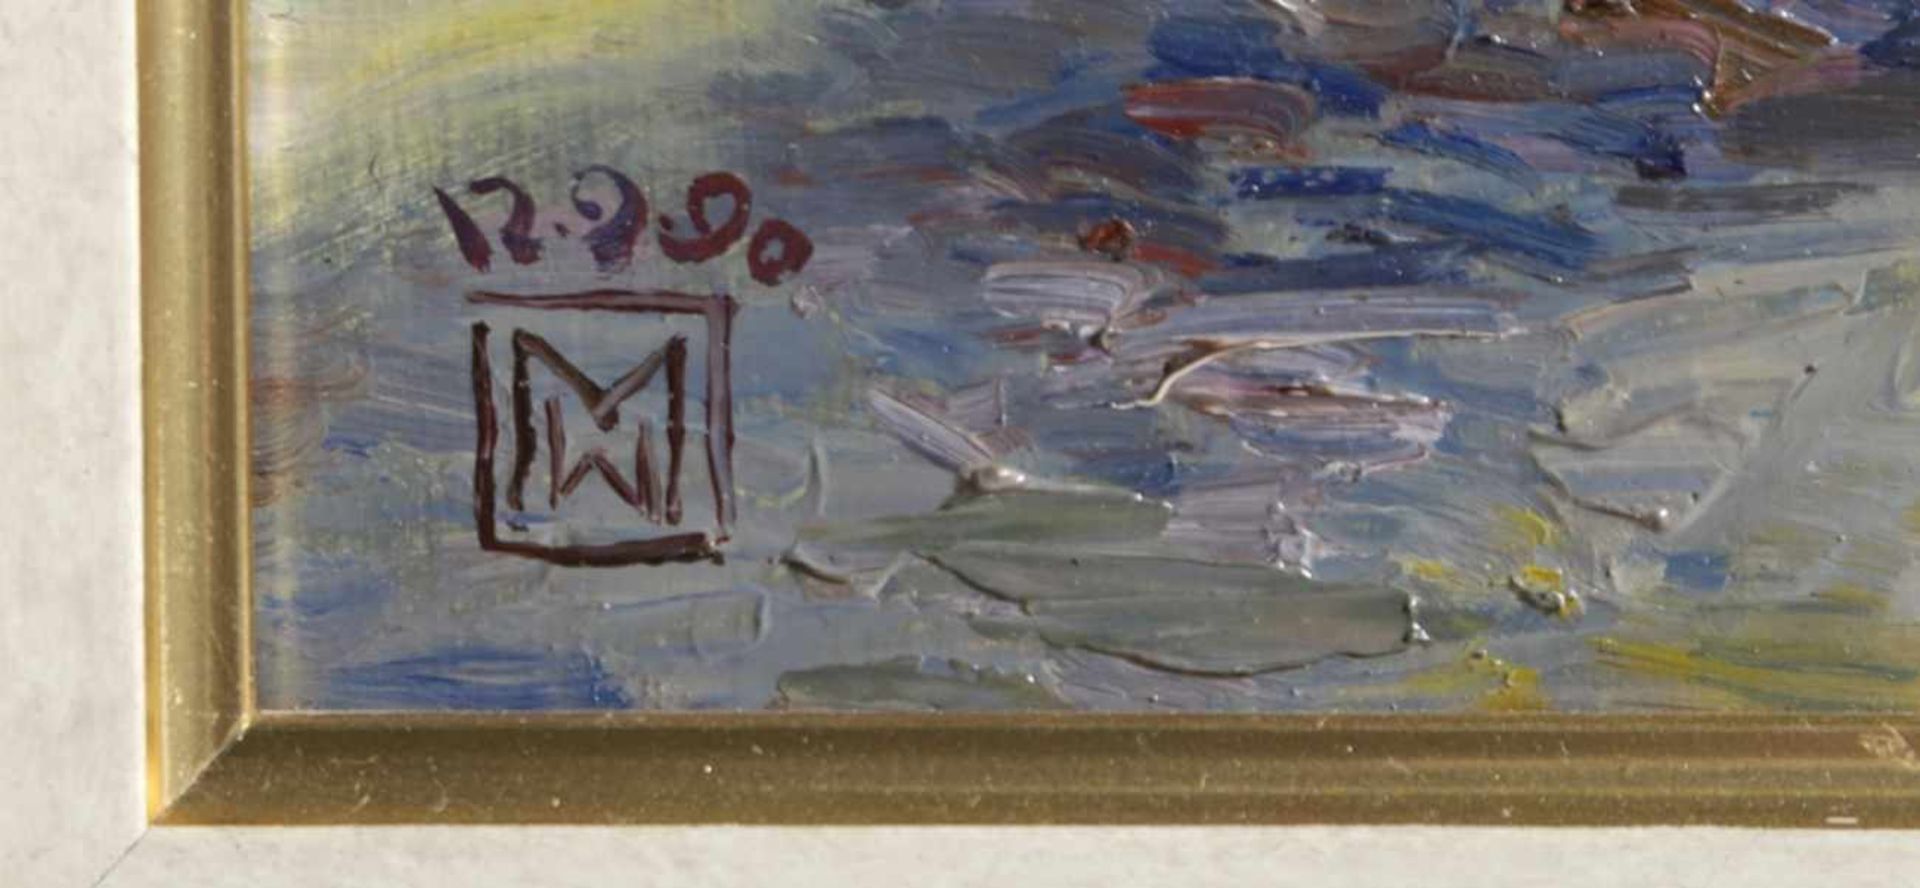 Monogrammierender Maler M.W., 2. Hälfte 20. Jh. "Stilleben", dat. 1990, Öl/Malpappe, 30 x24 cm- - - - Bild 2 aus 2